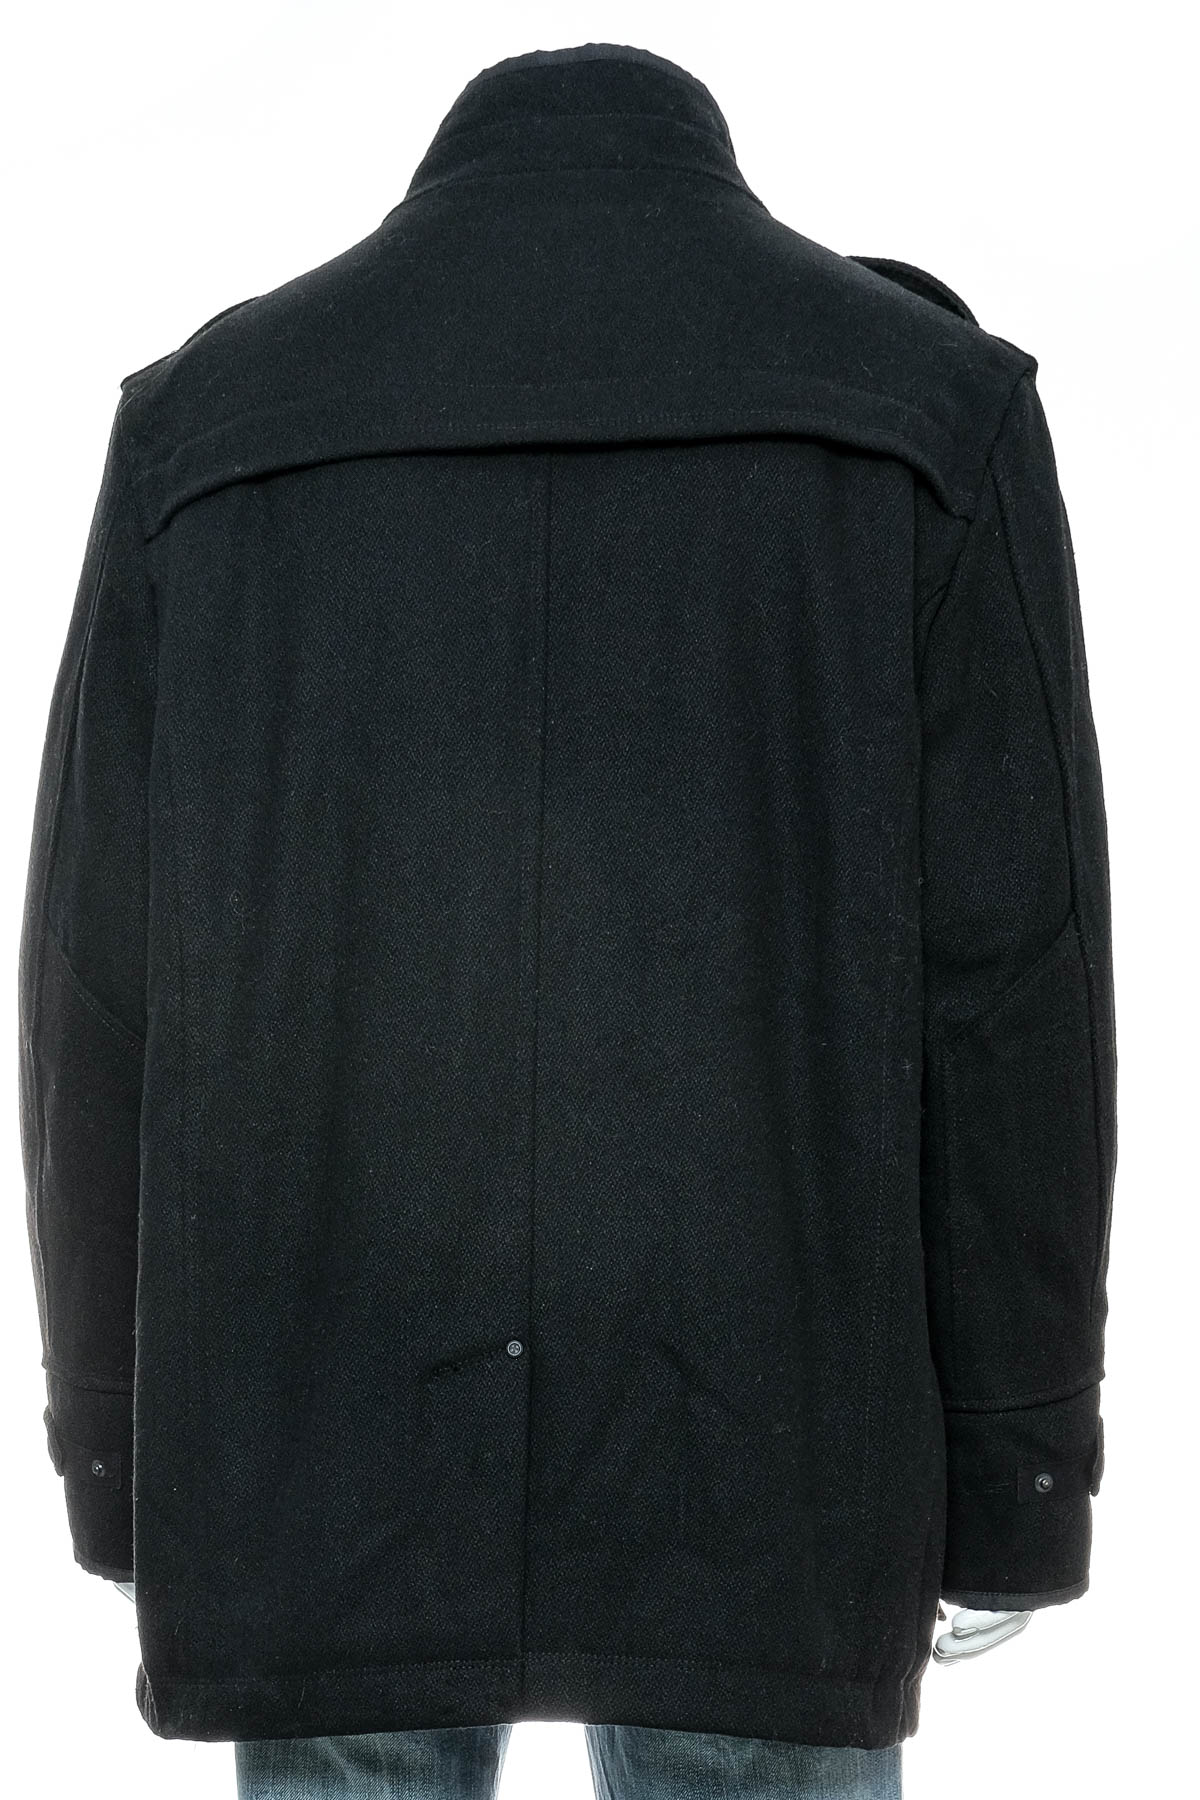 Men's coat - F.F.P - 1